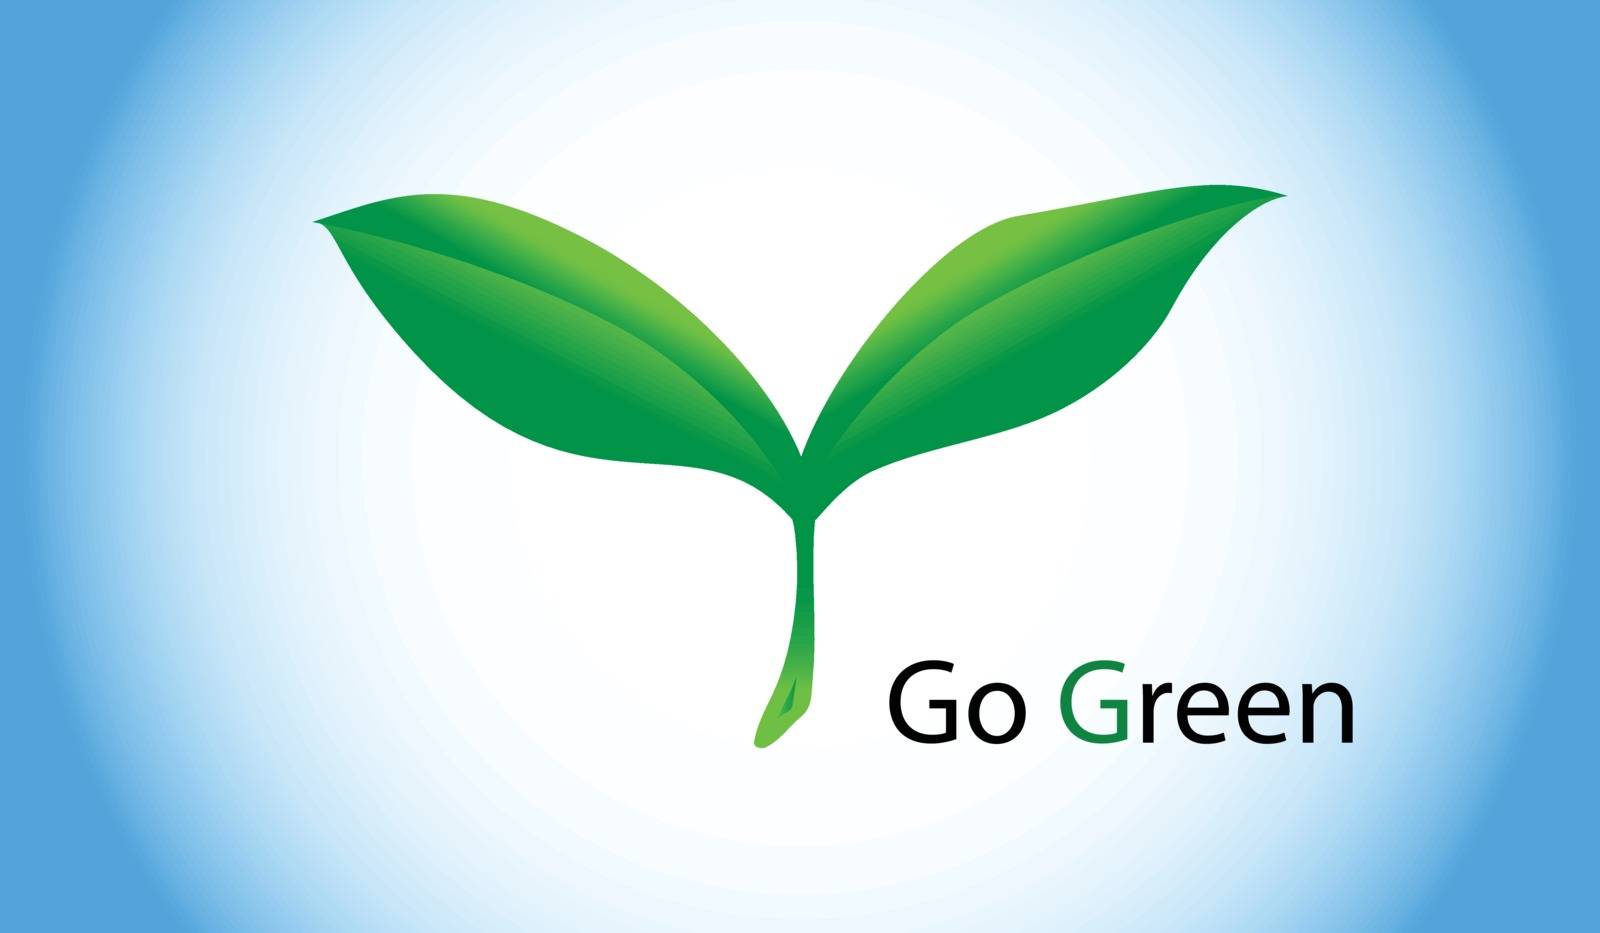 Go green by rinika